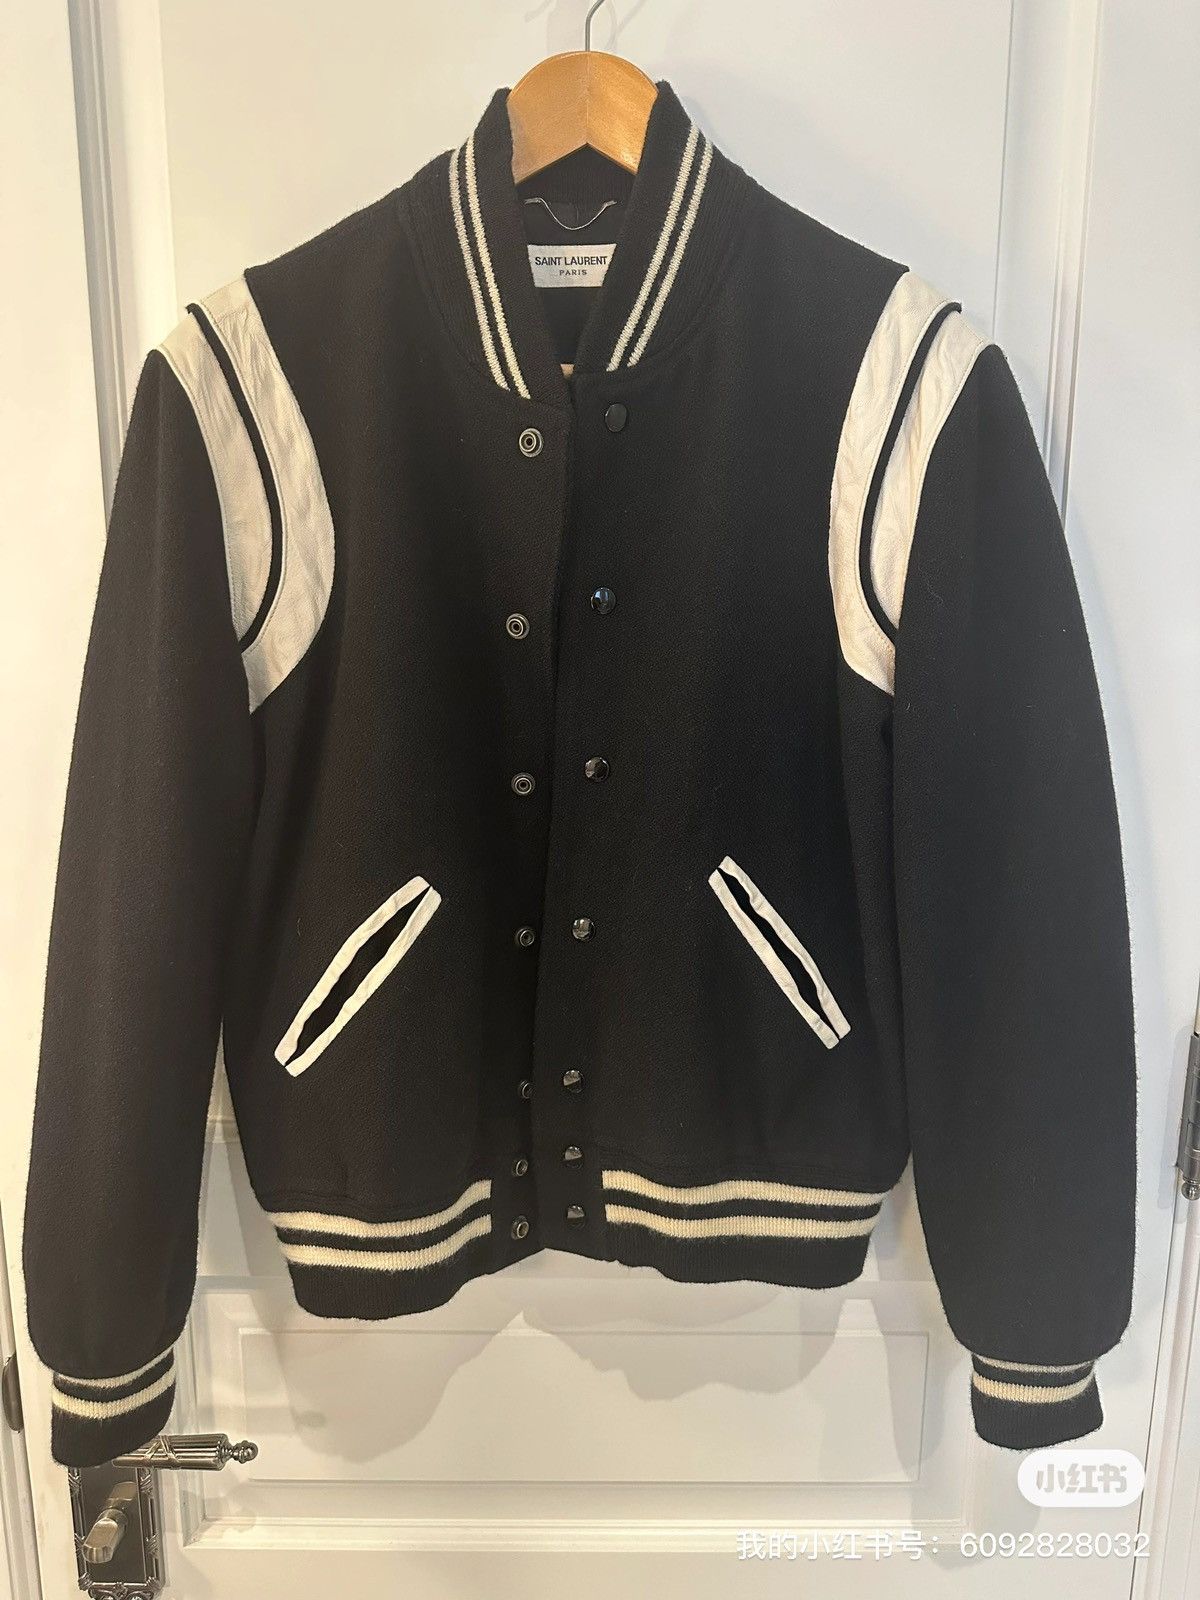 Saint Laurent Paris 2018 Saint Laurent Teddy Jacket Size US S / EU 44-46 / 1 - 1 Preview